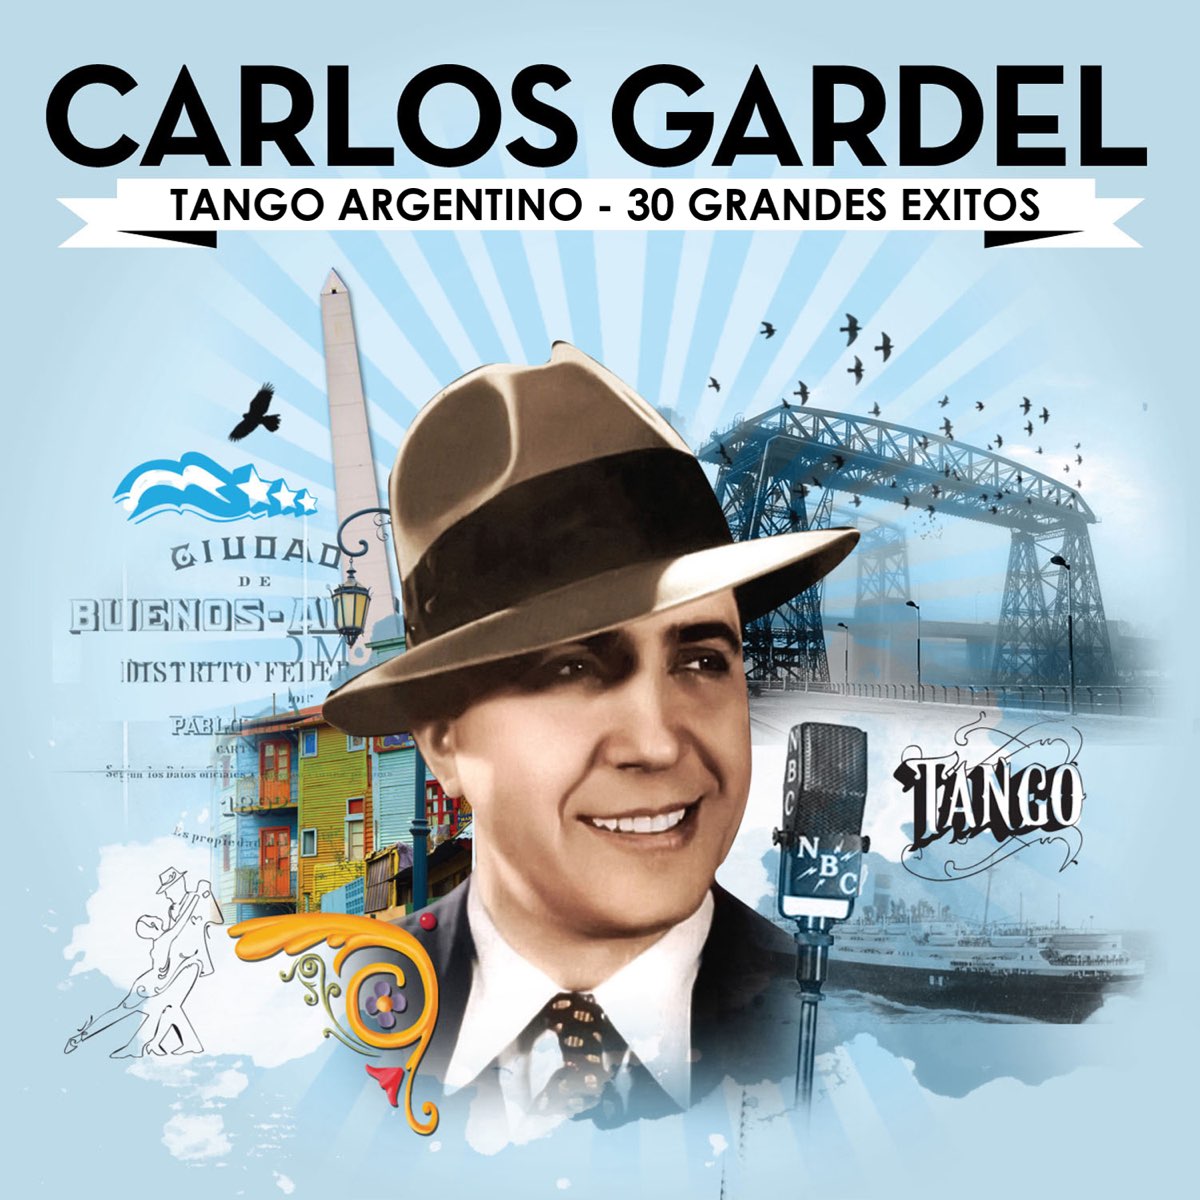 Un fiel No quiero Agresivo Carlos Gardel. Tango Argentino - 30 Grandes Exitos by Carlos Gardel on  Apple Music